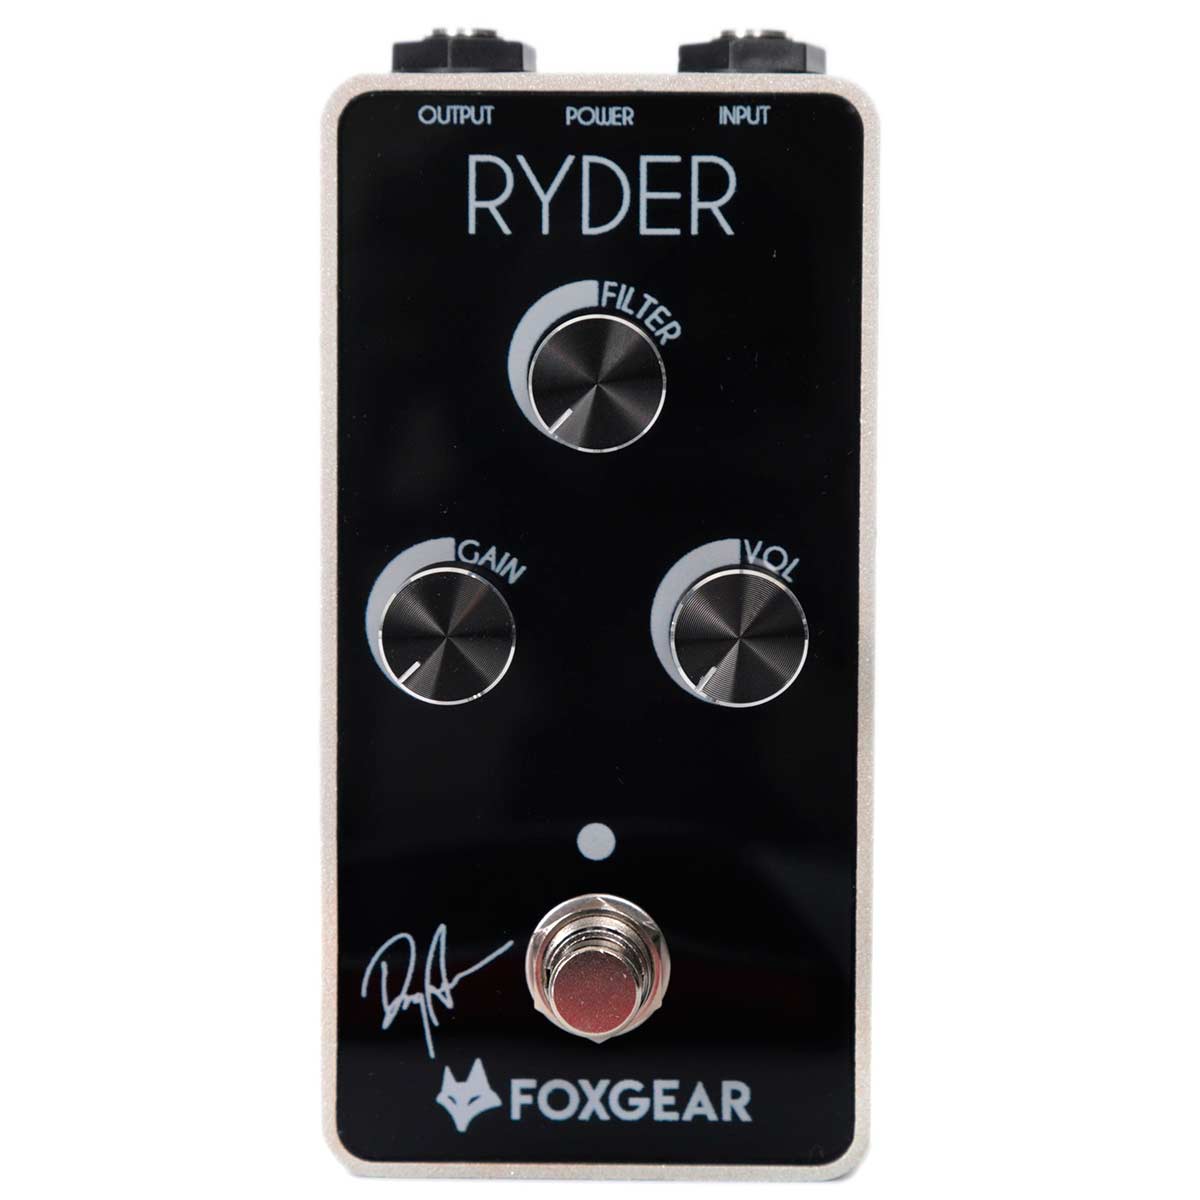 Pedal de distorsión para guitarra Foxgear Ryder Distortion